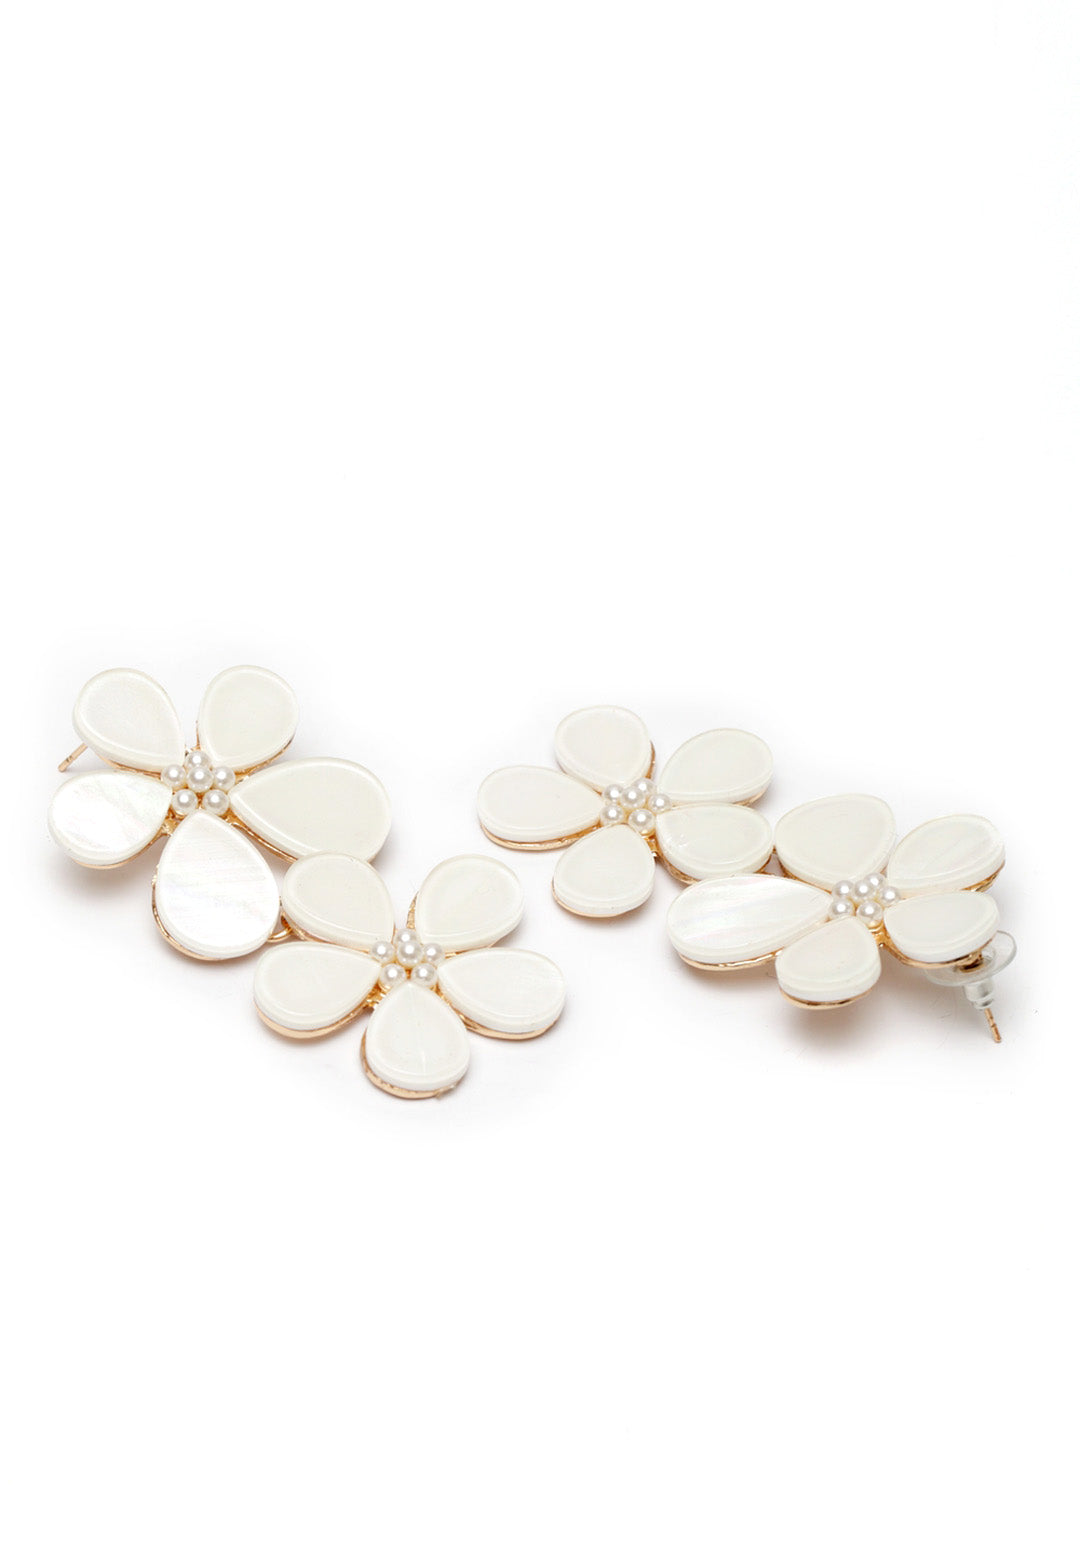 Avant-Garde Paris Statement Bohemian Cute Acrylic Flower Stud Earrings